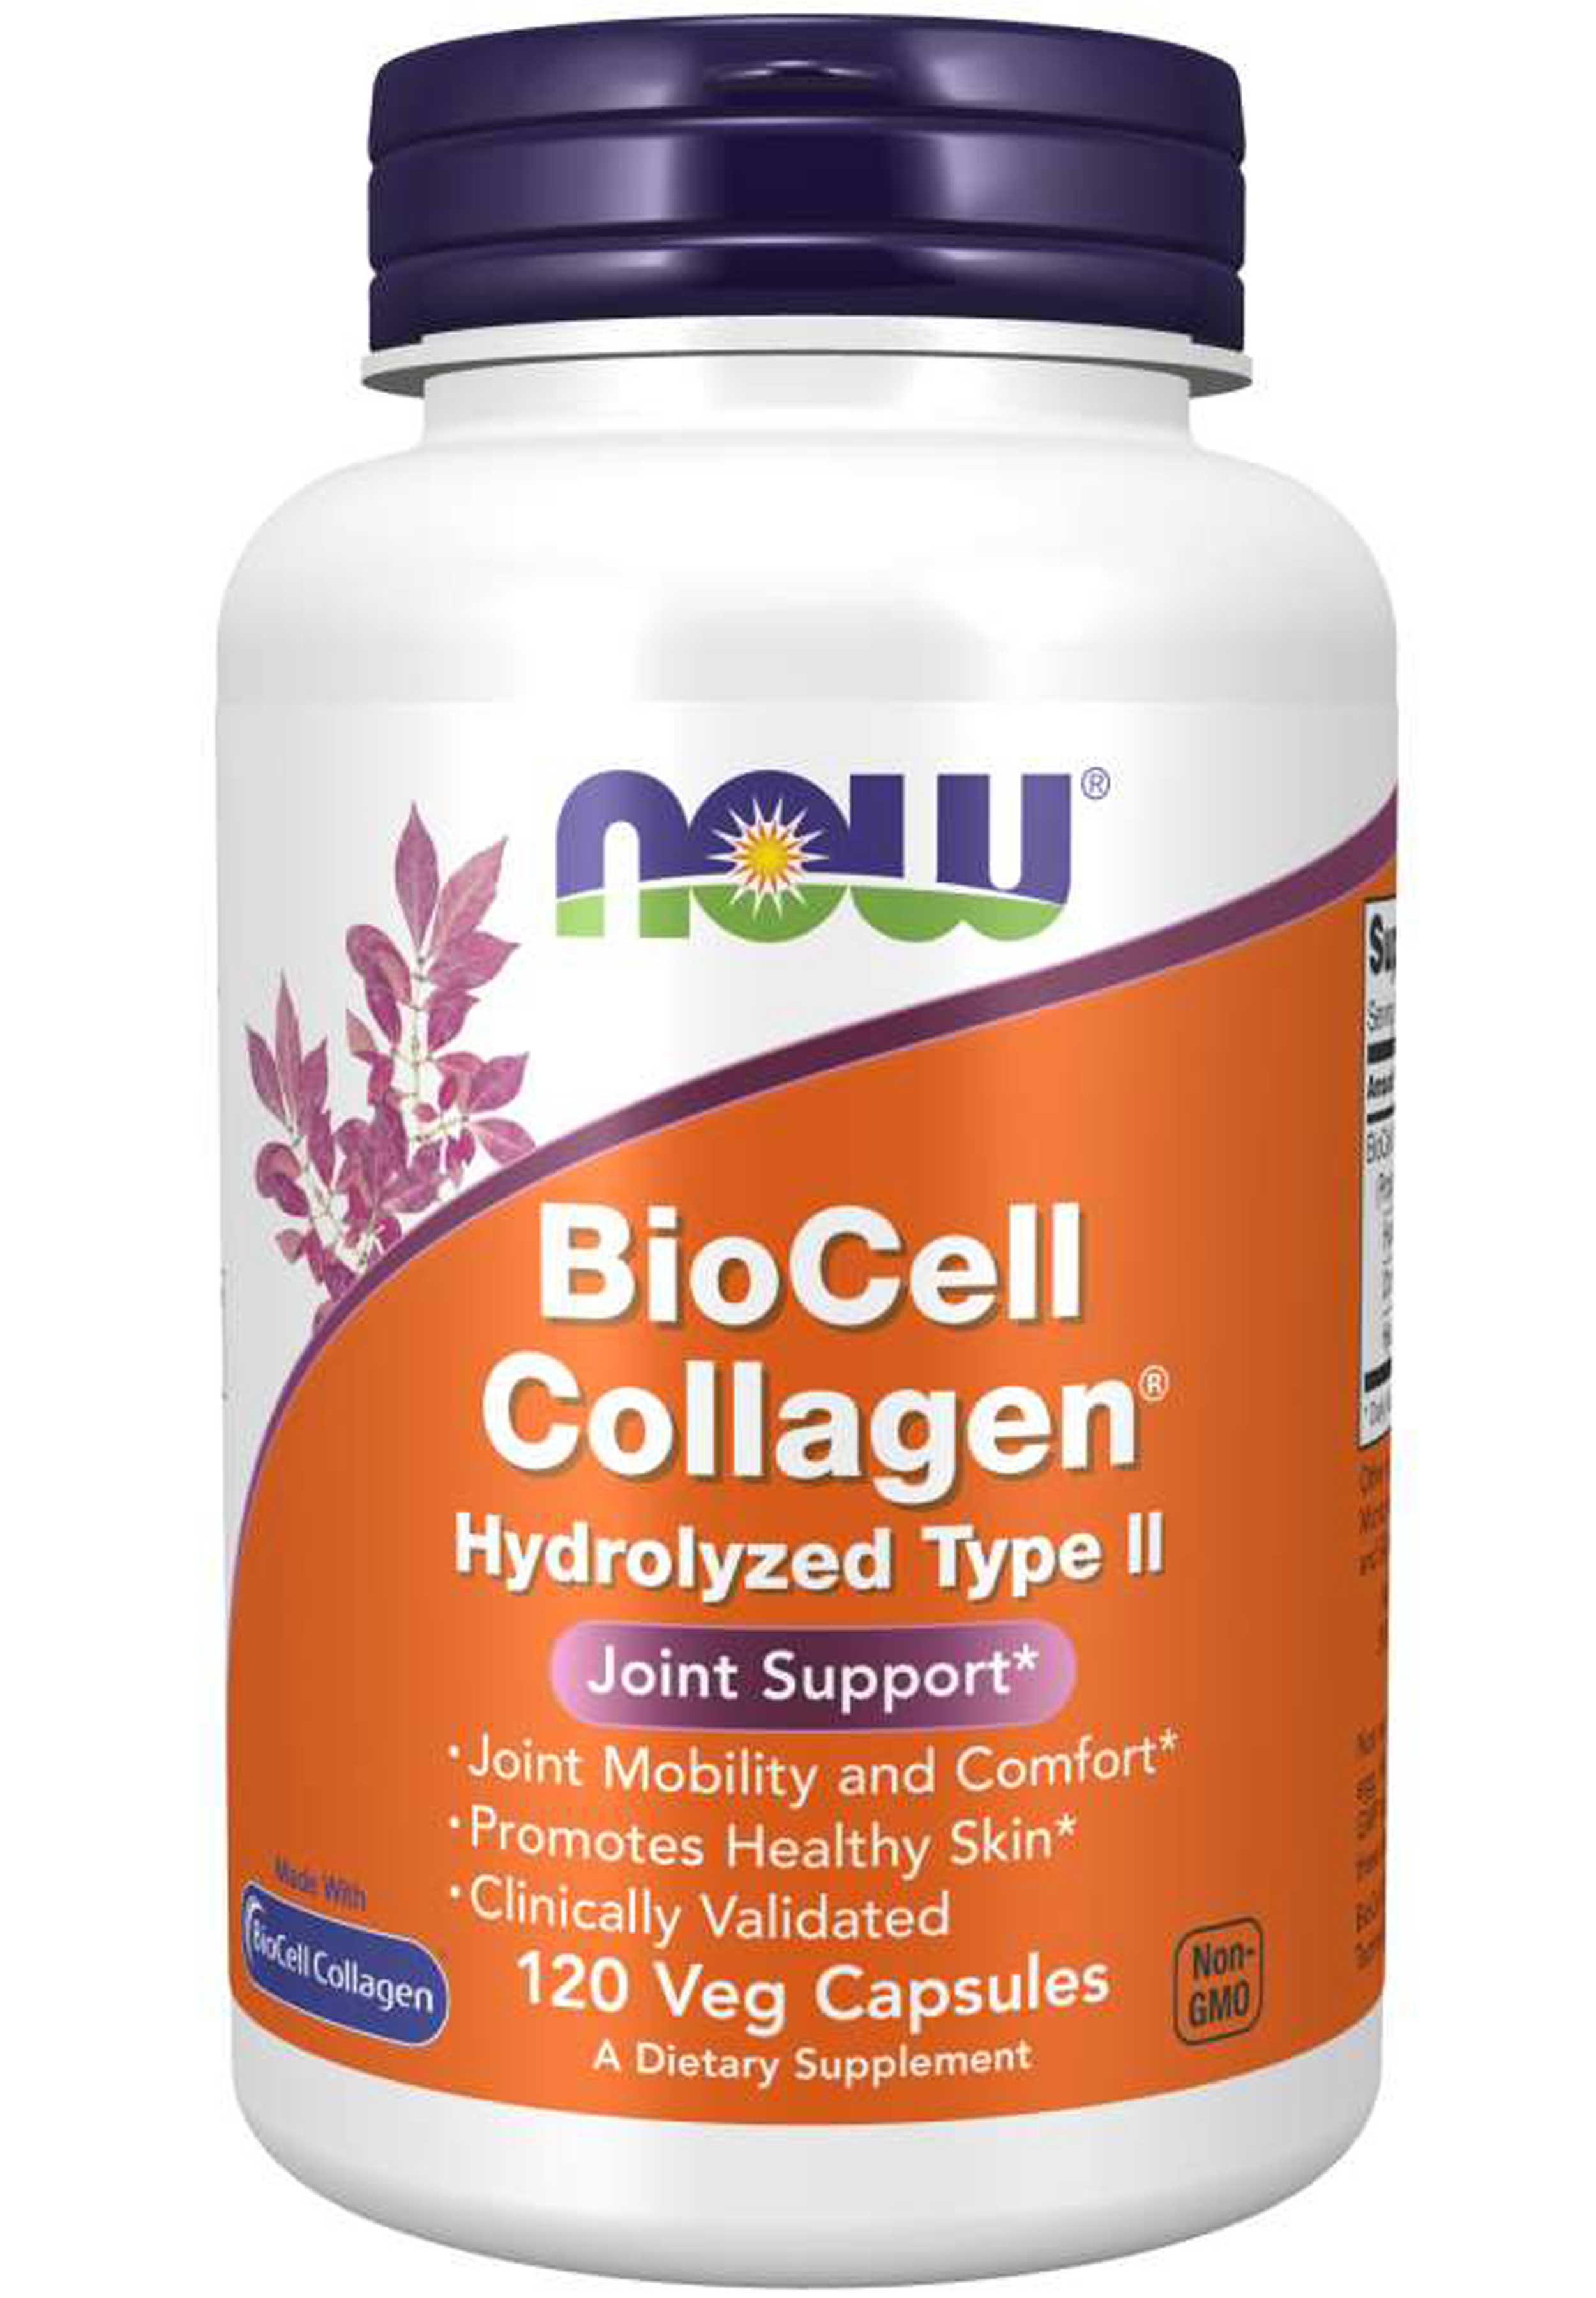 NOW BioCell Collagen Hydrolyzed Type II